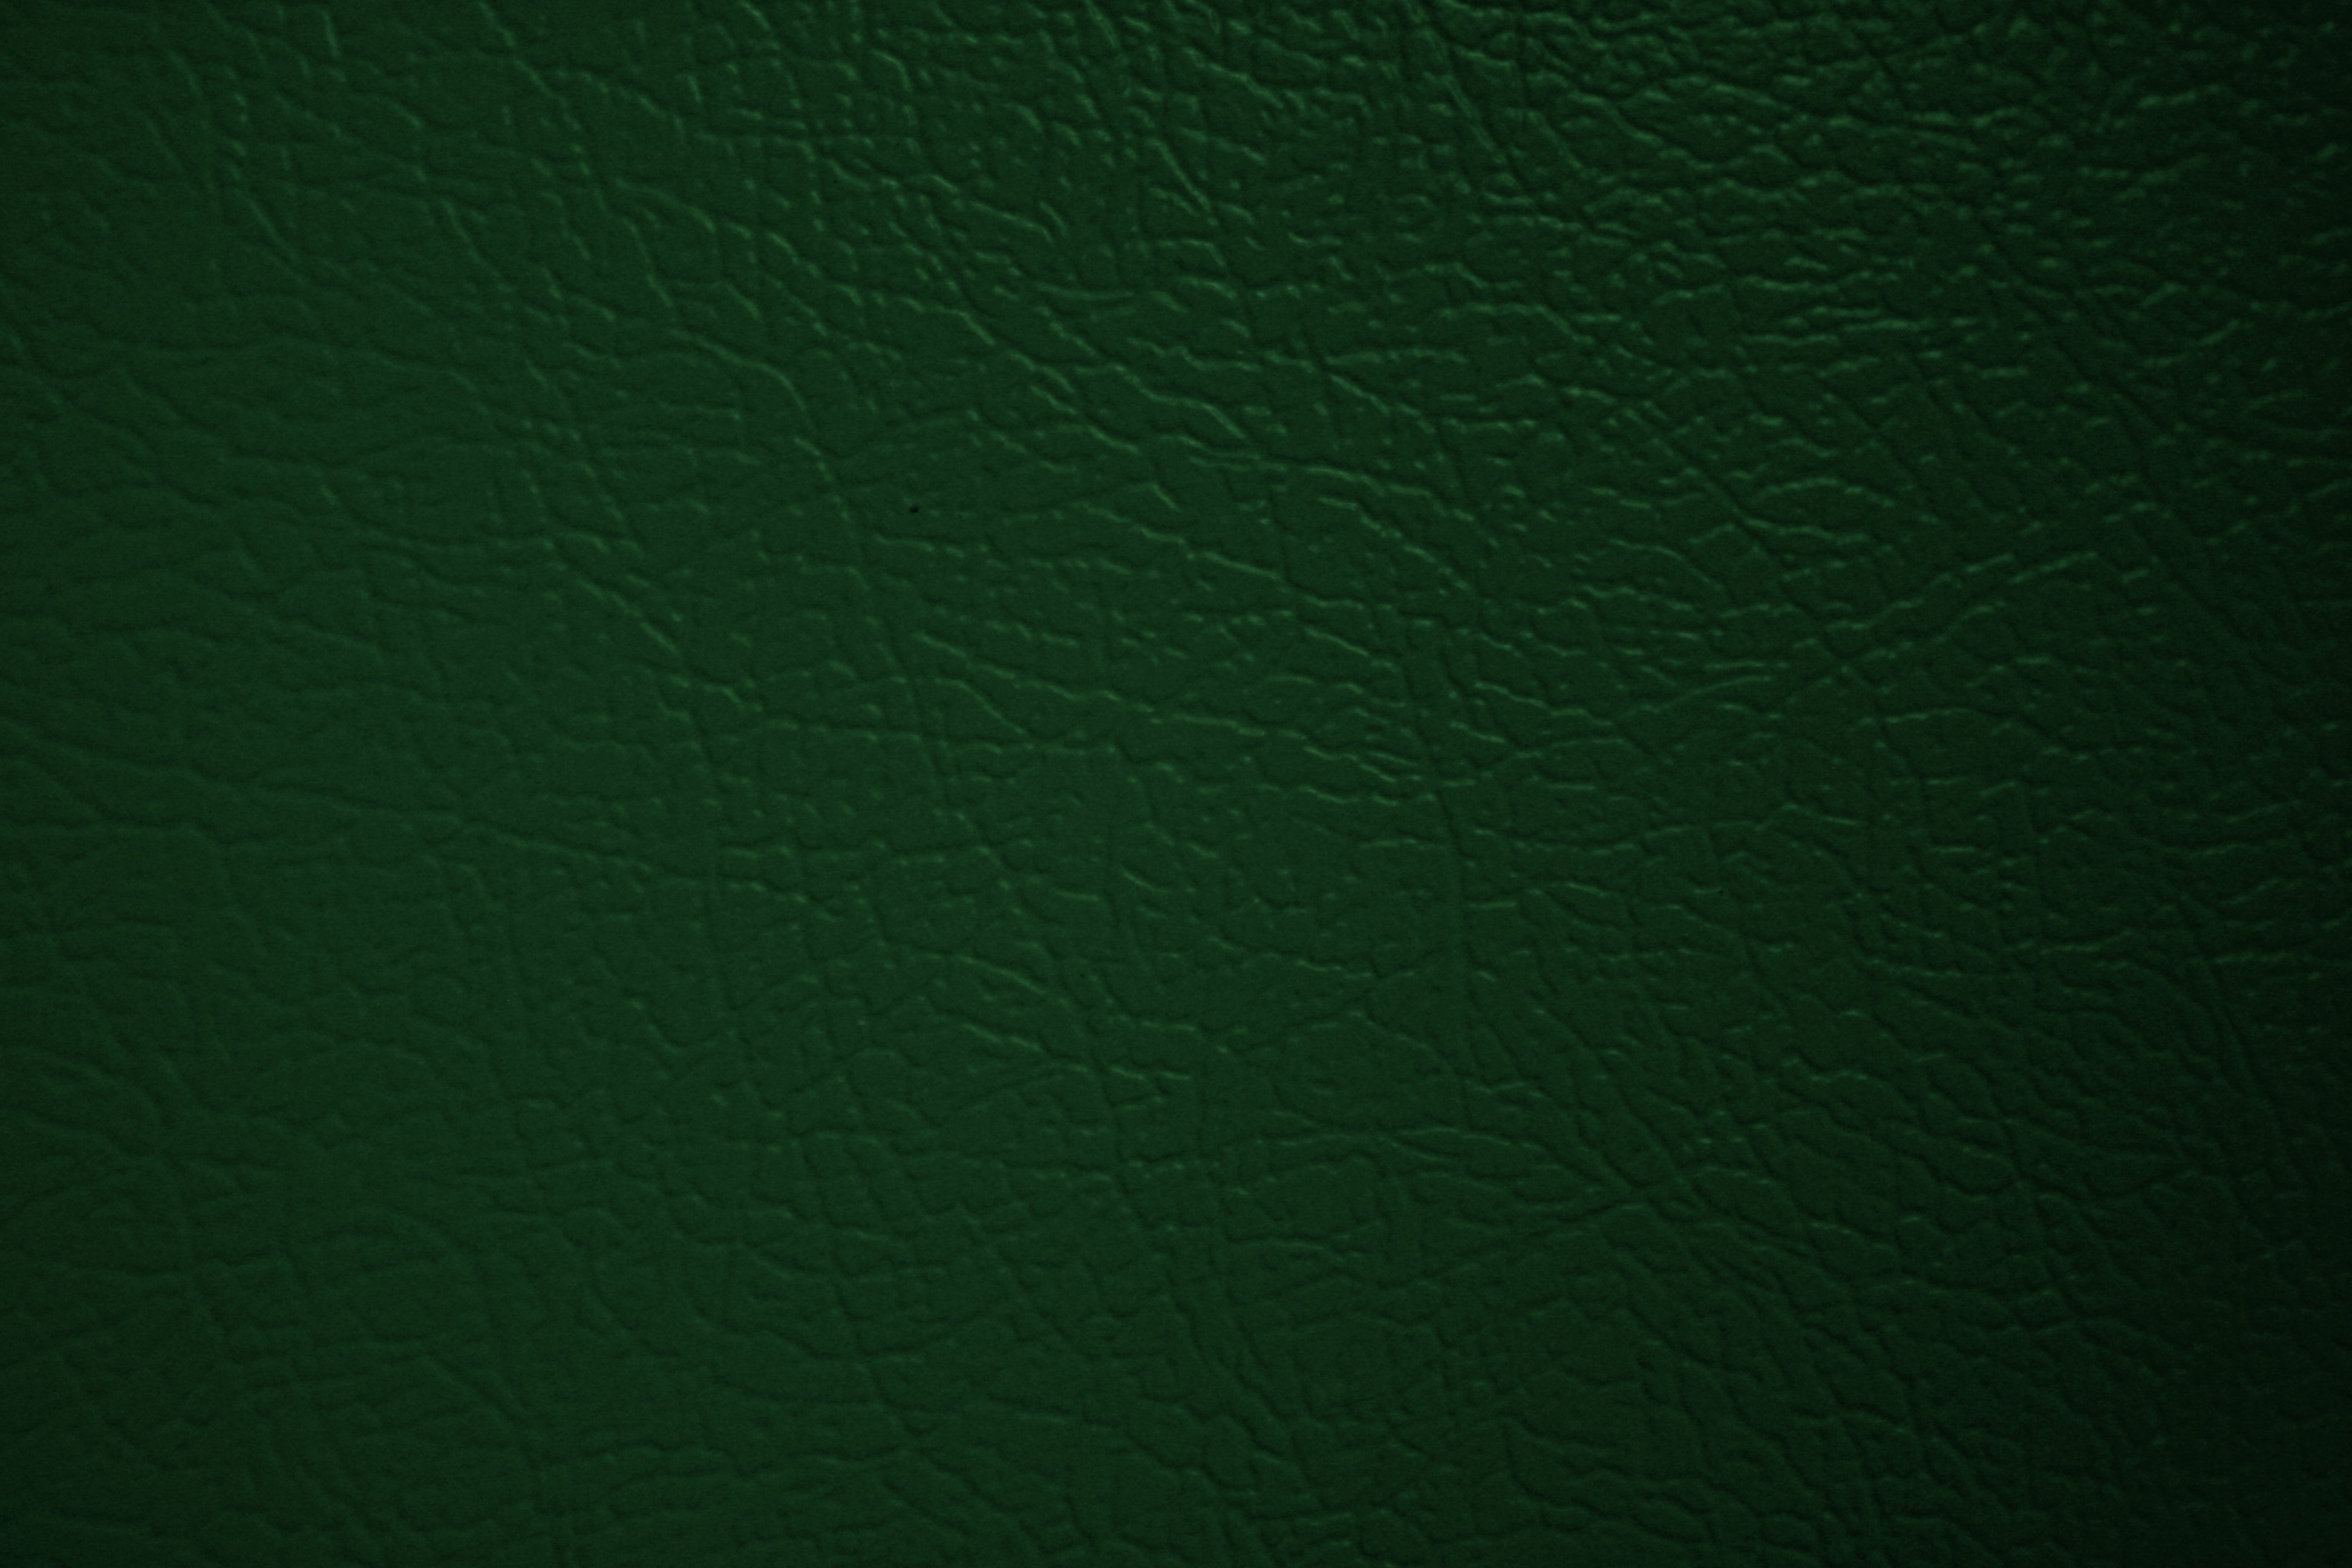 Green Faux Leather Texture Picture Photograph Photos Public